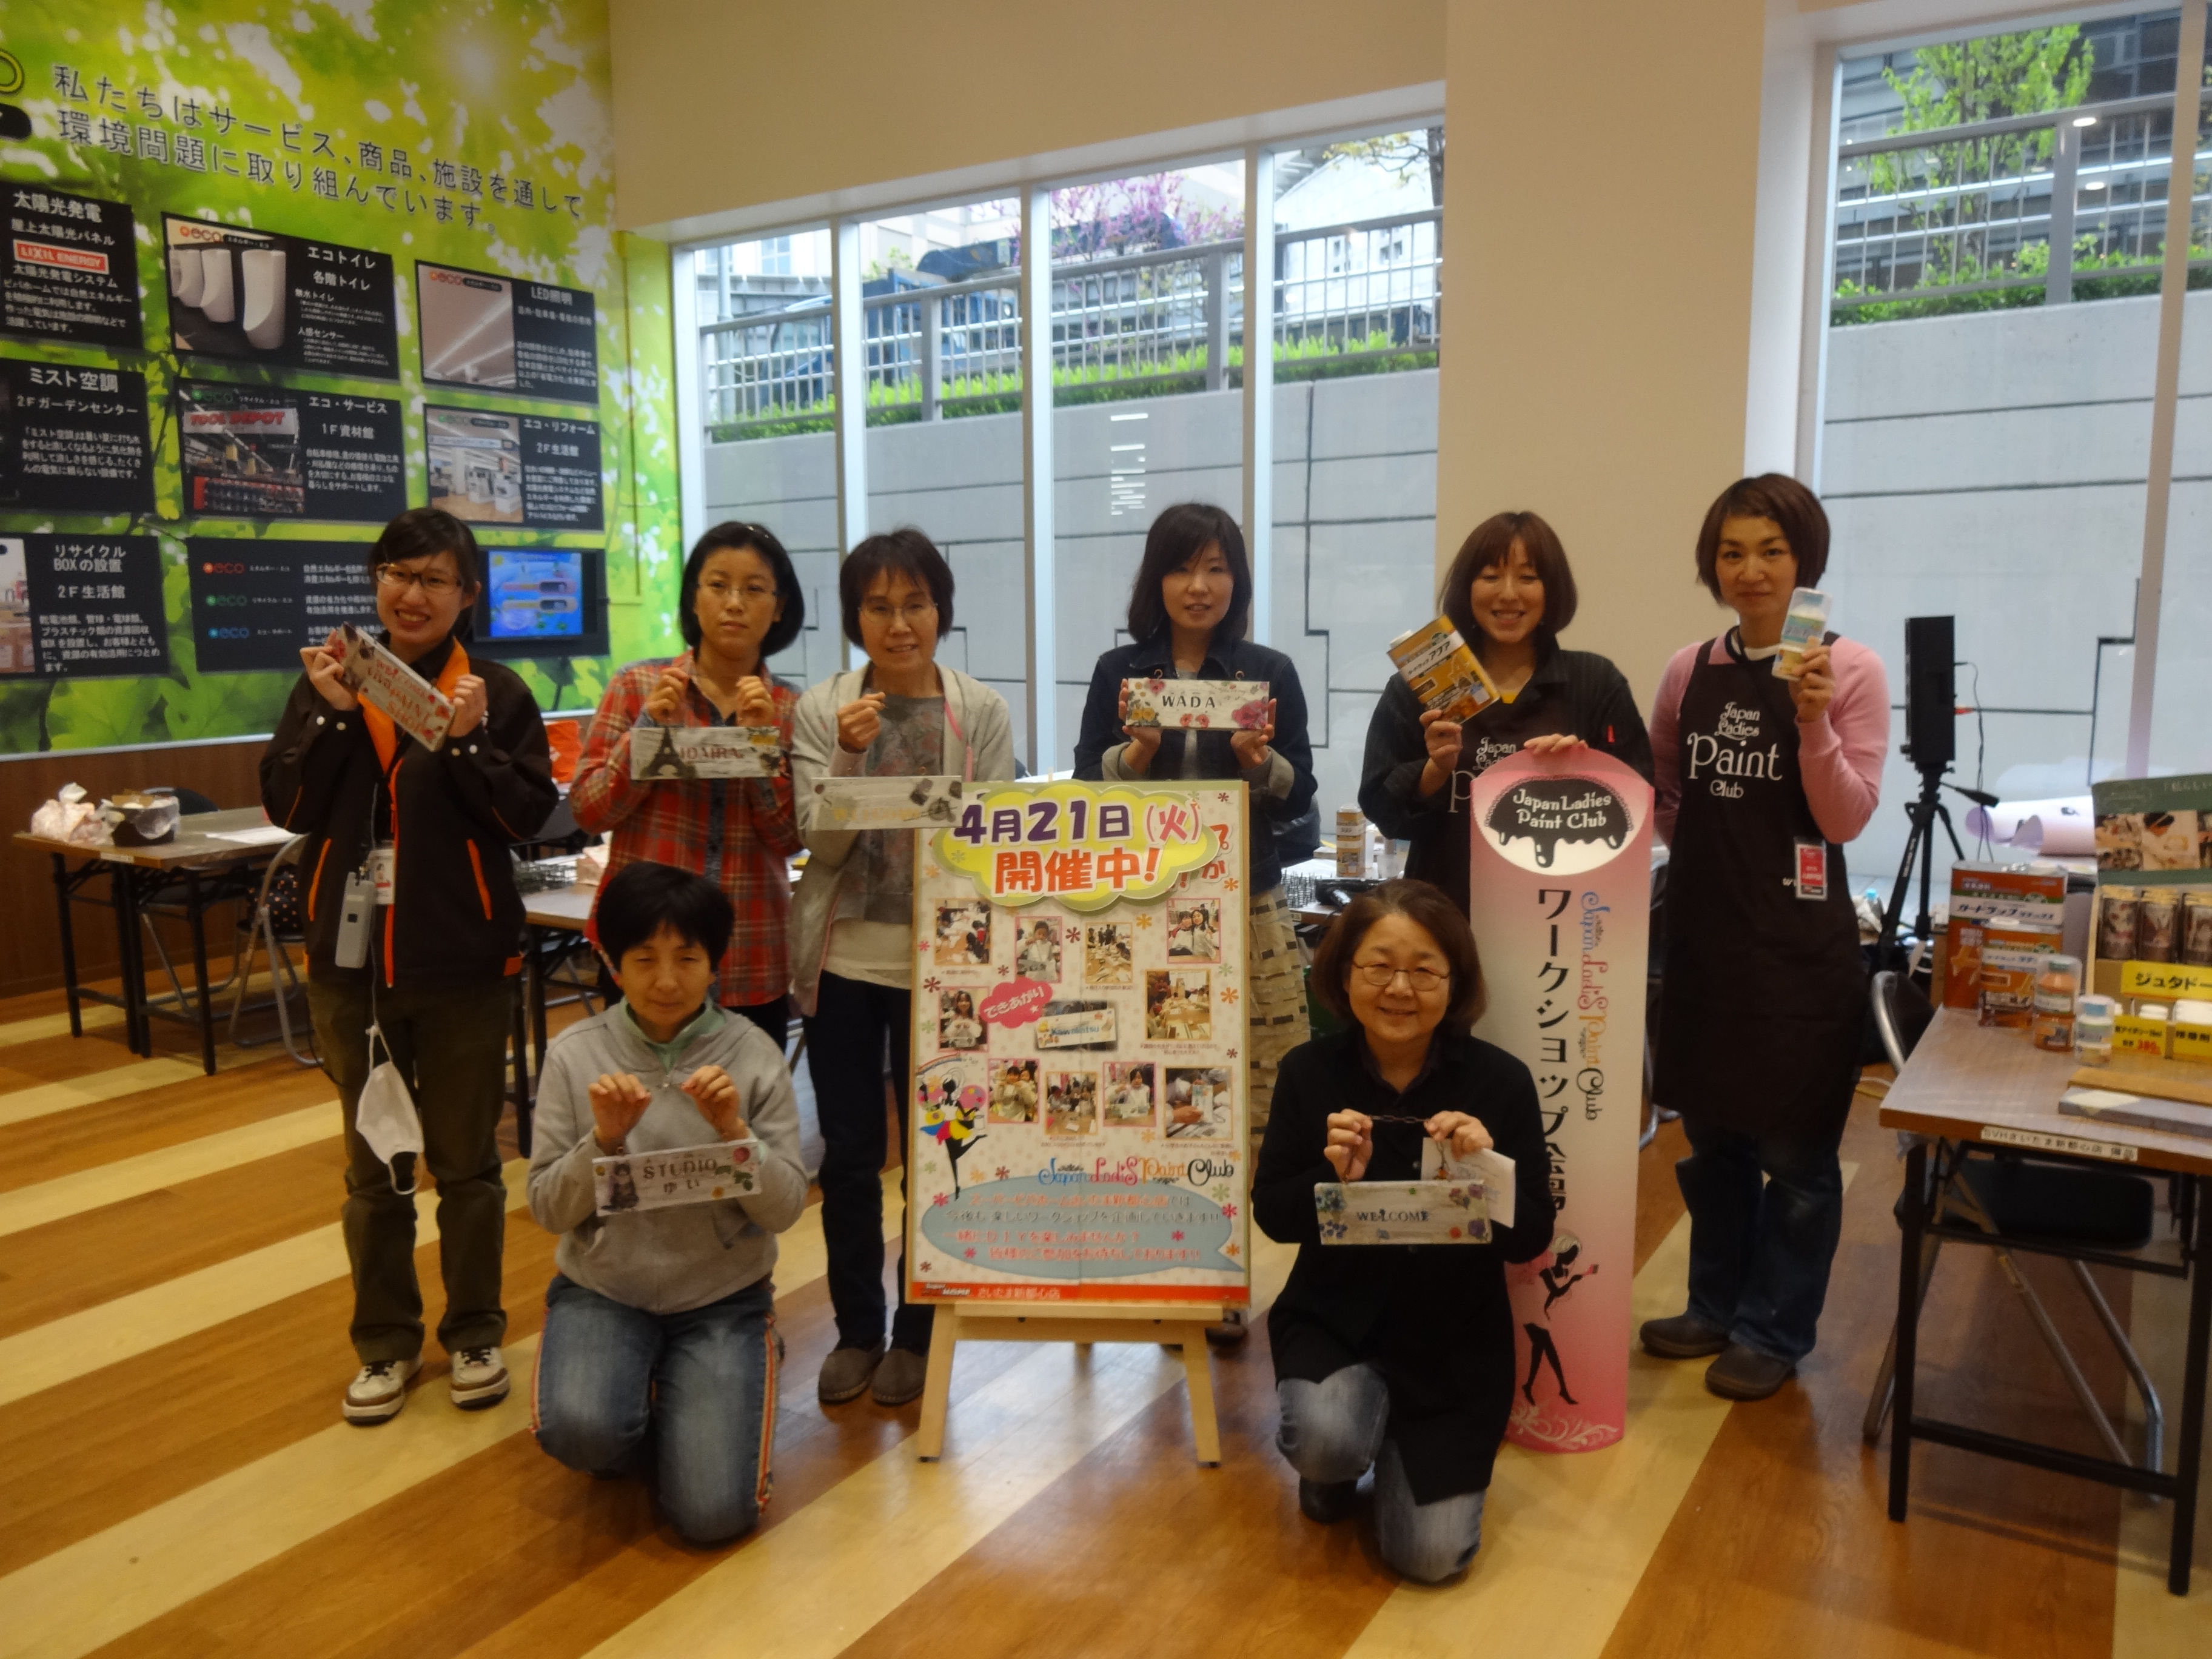 4 21 リビングさいたま様 主催でスーパービバホーム さいたま新都心店さまでワークショップ開催しました Japan Ladies Paint Club